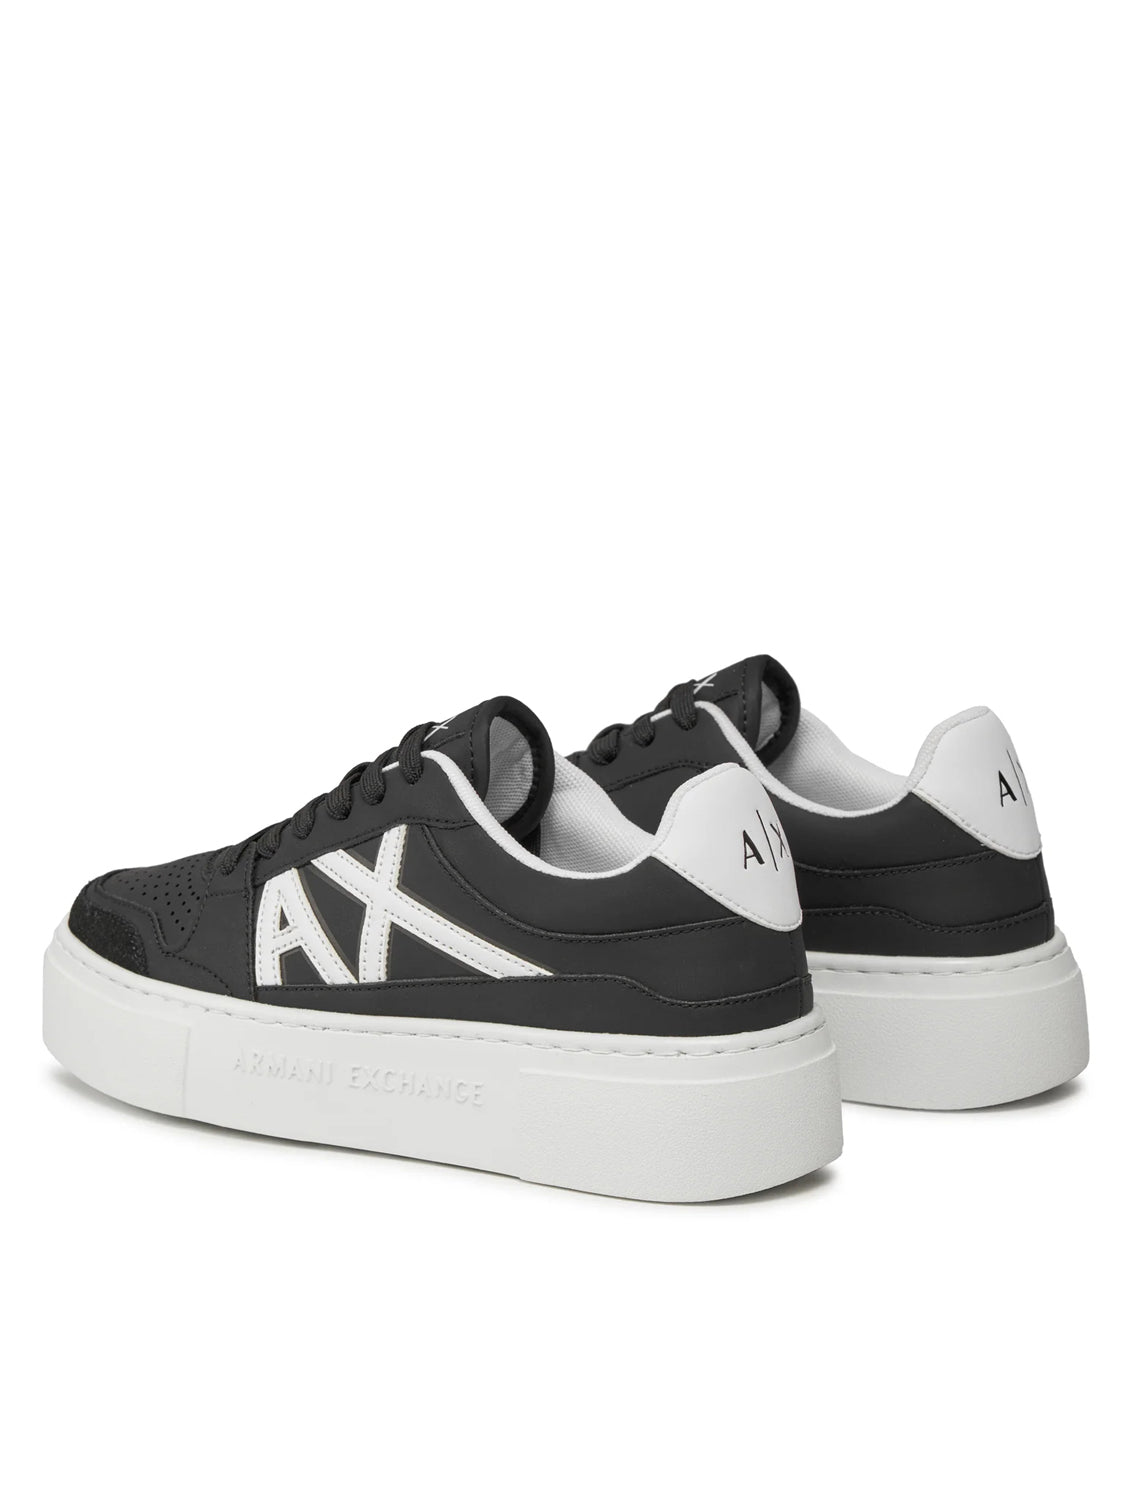 Armani Sapatilhas Sneakers Shoes Xdx147 Xv830 Blk White Preto Branco_shot3